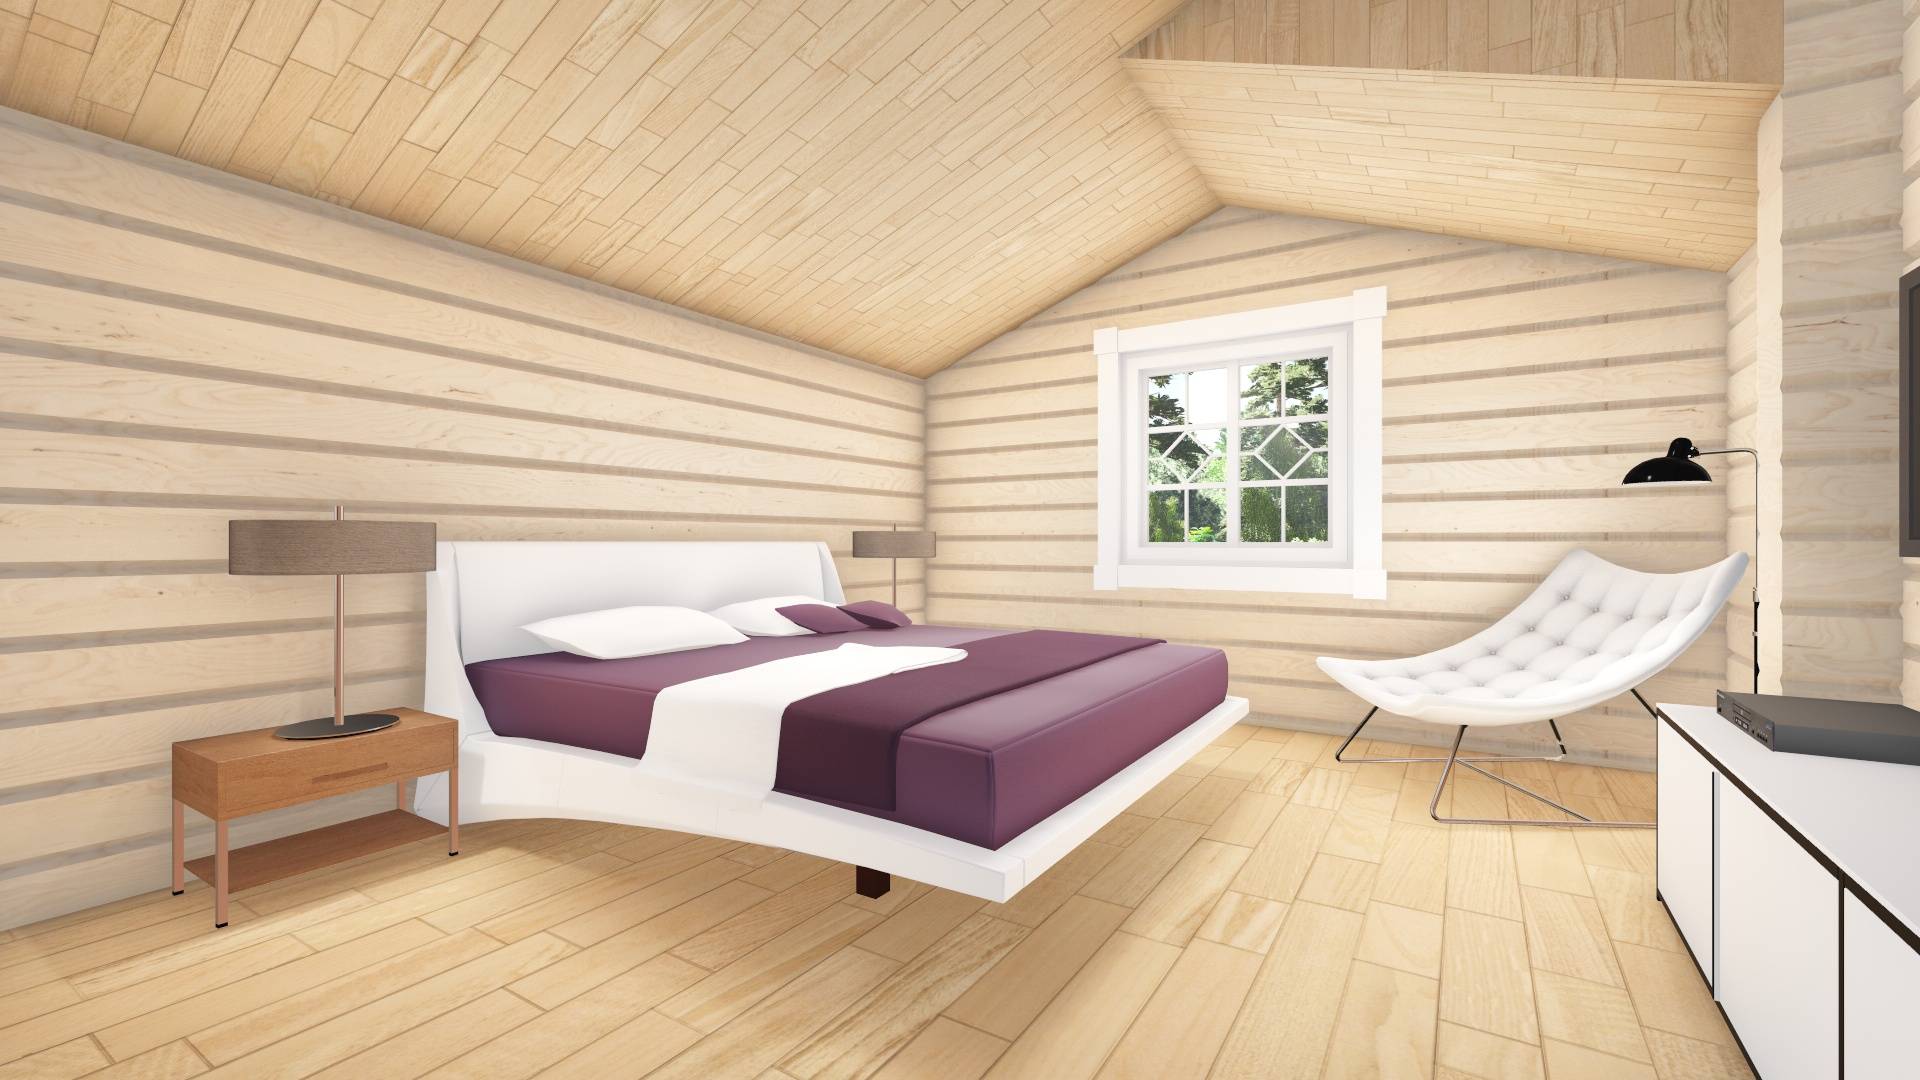 Блок-хаус для внутренней отделки (47 фото): как обшить потолок спальной комнаты в квартире, варианты сочетаний материалов внутри дома